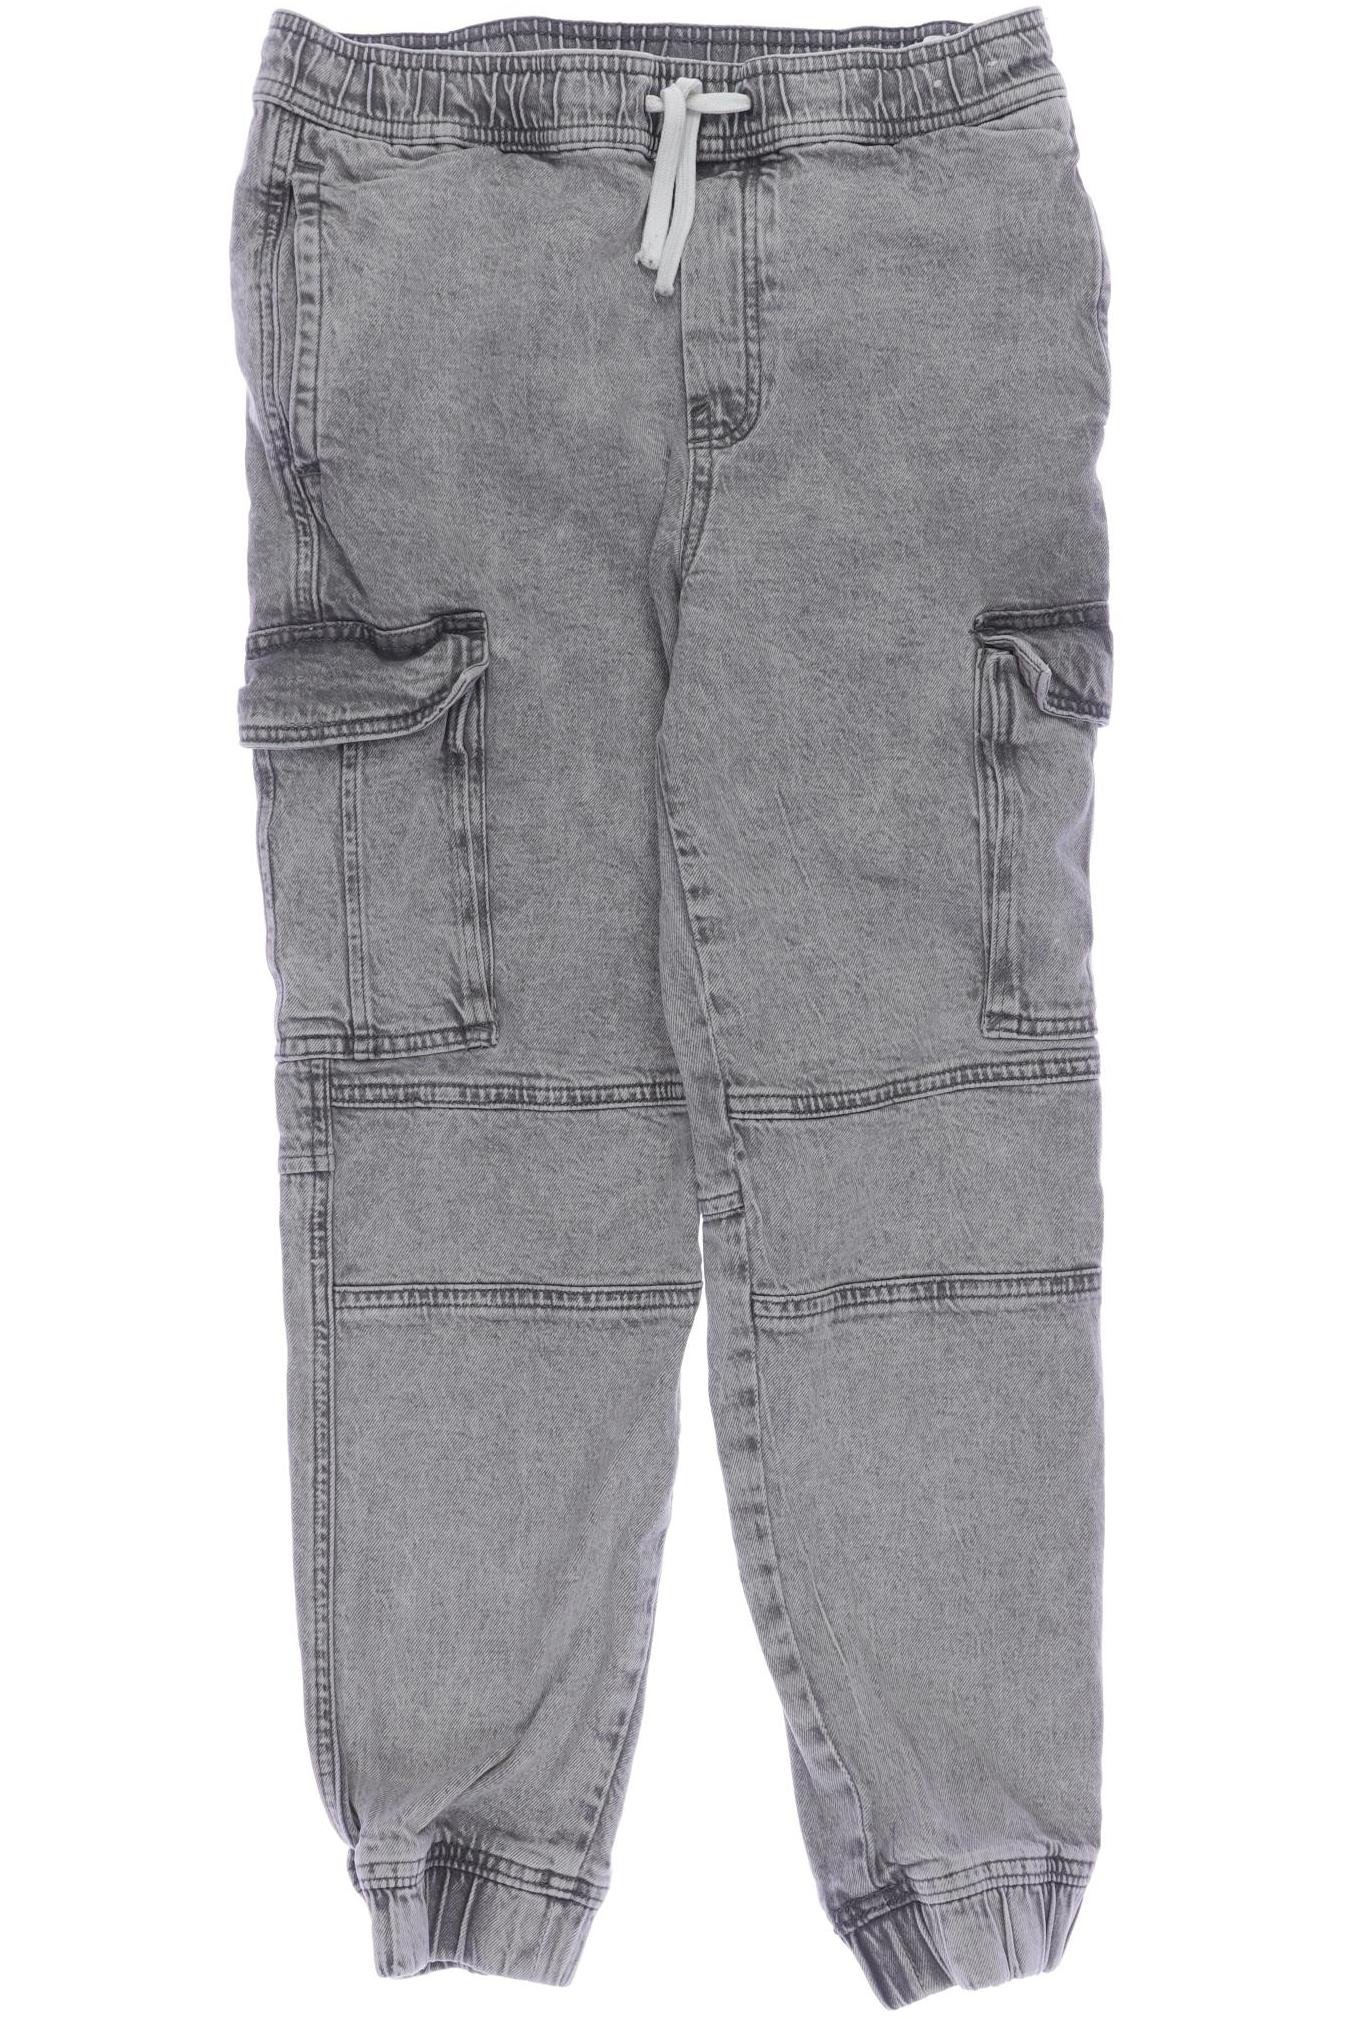 H&M Herren Jeans, grau, Gr. 158 von H&M